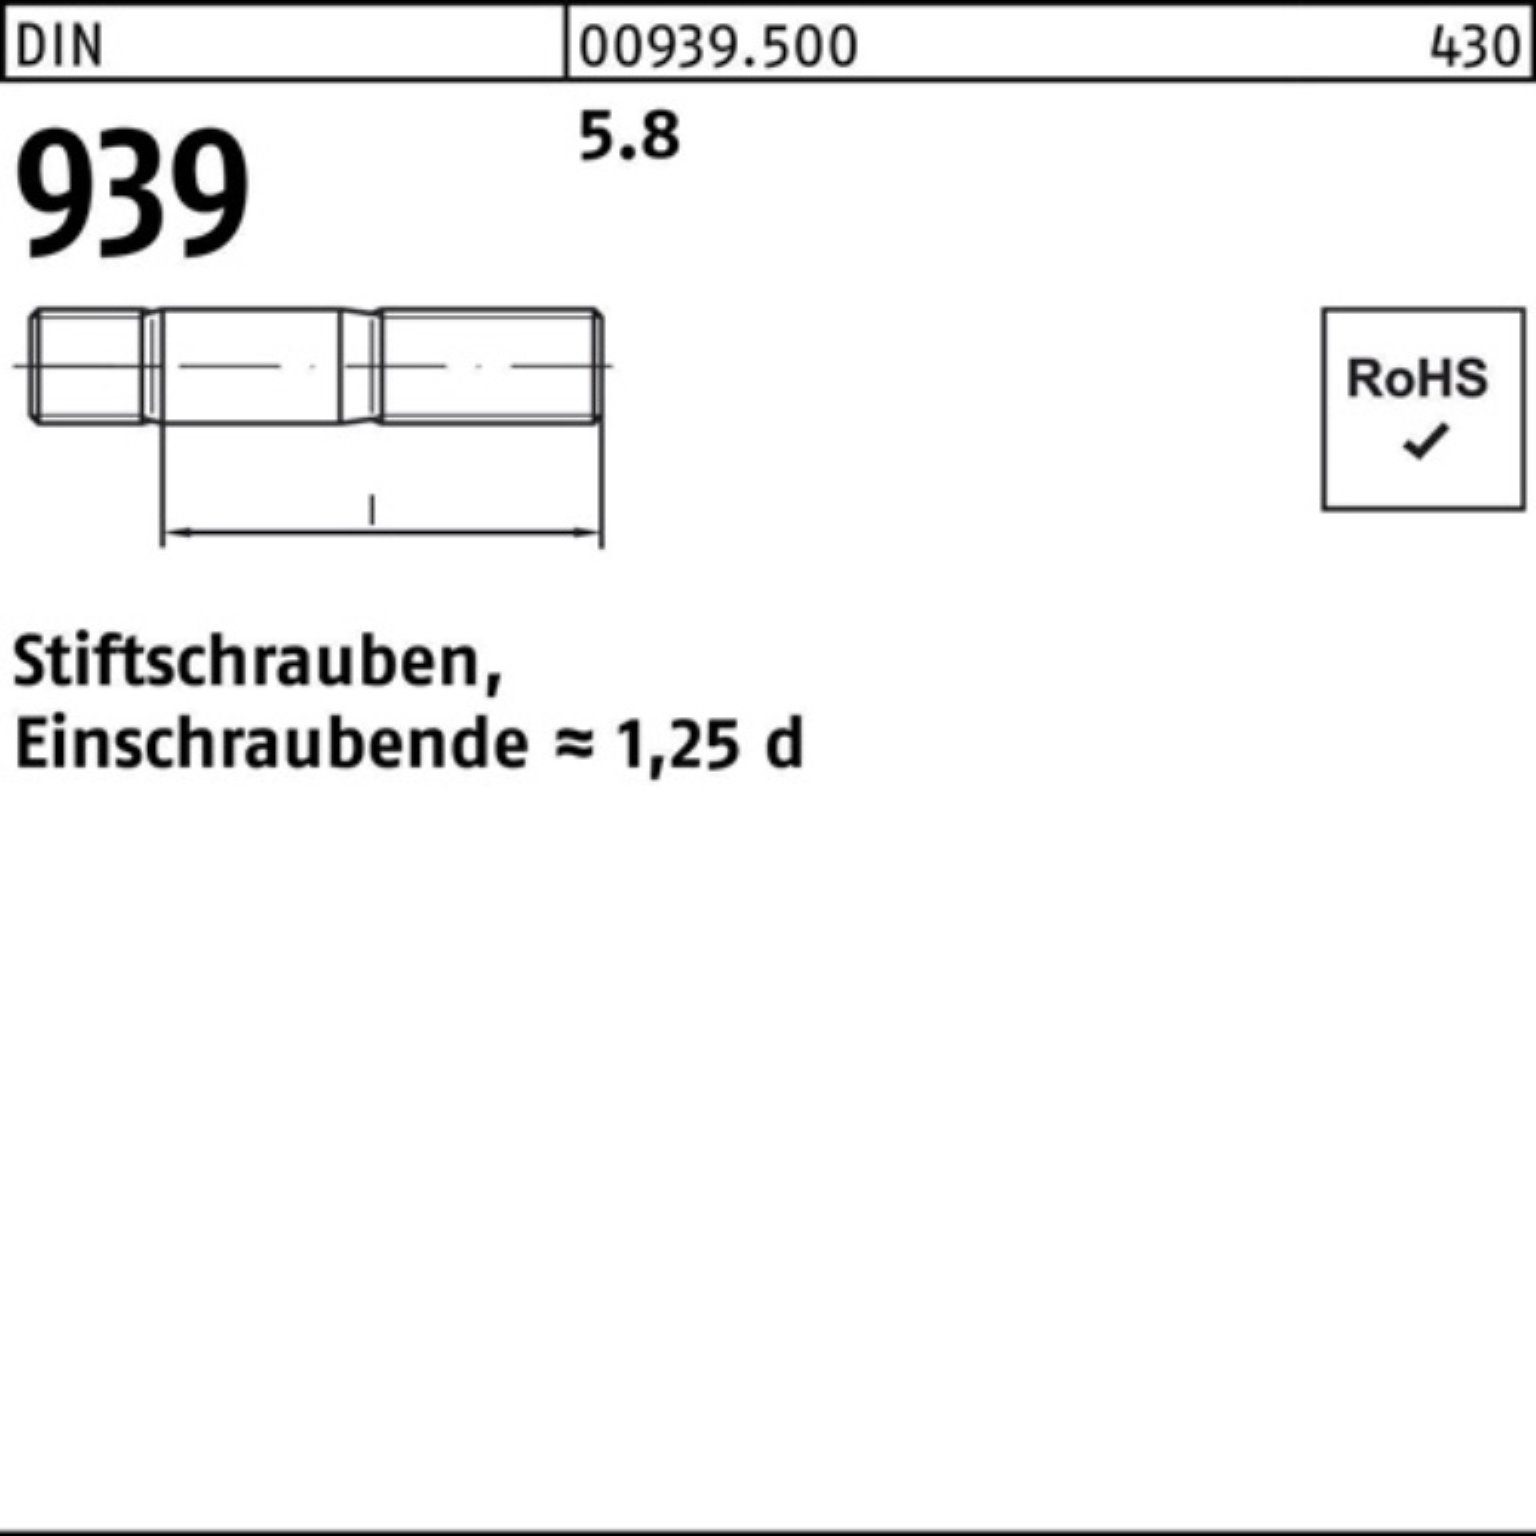 M30x 1 Pack Einschraubende=1,25d 90 Stiftschraube Stiftschraube 939 100er 5.8 St Reyher DIN